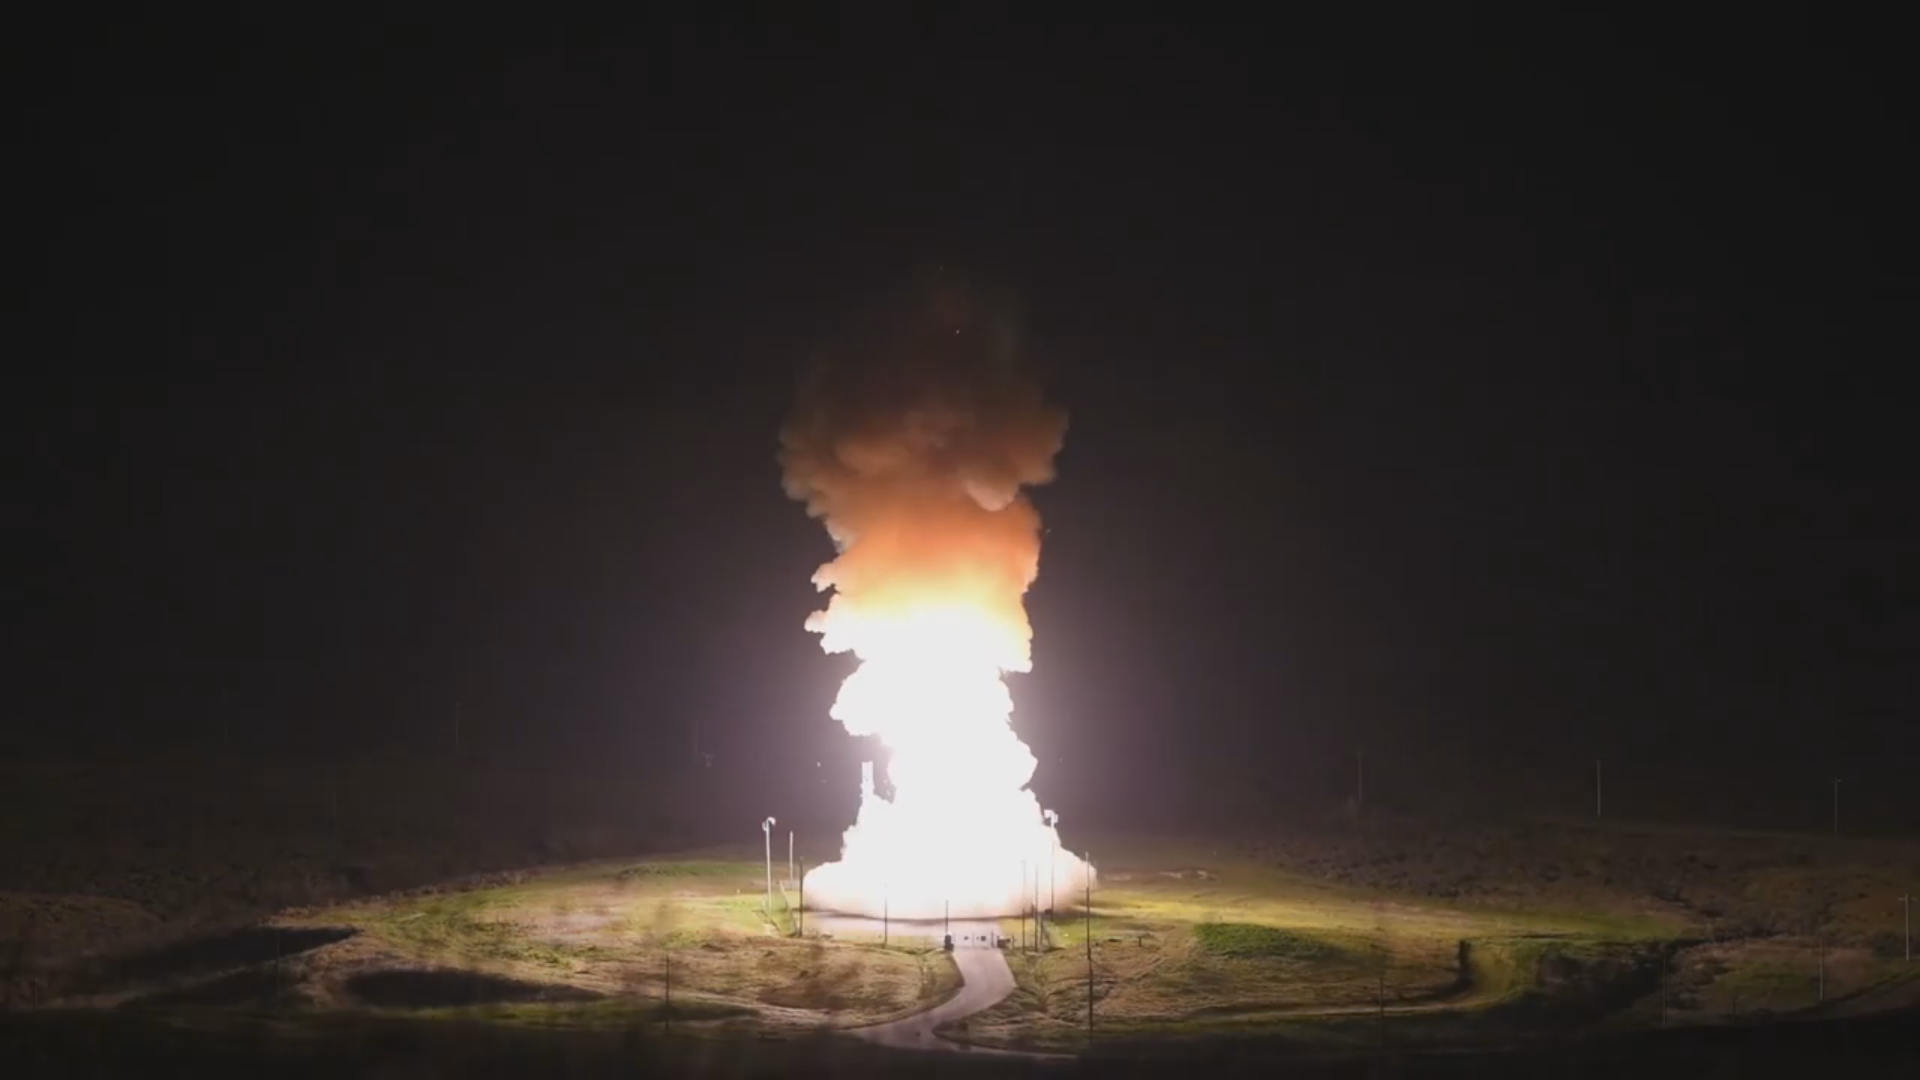 US Air Force pokazuje rzadkie nagranie ze startu międzykontynentalnej rakiety balistycznej Minuteman III